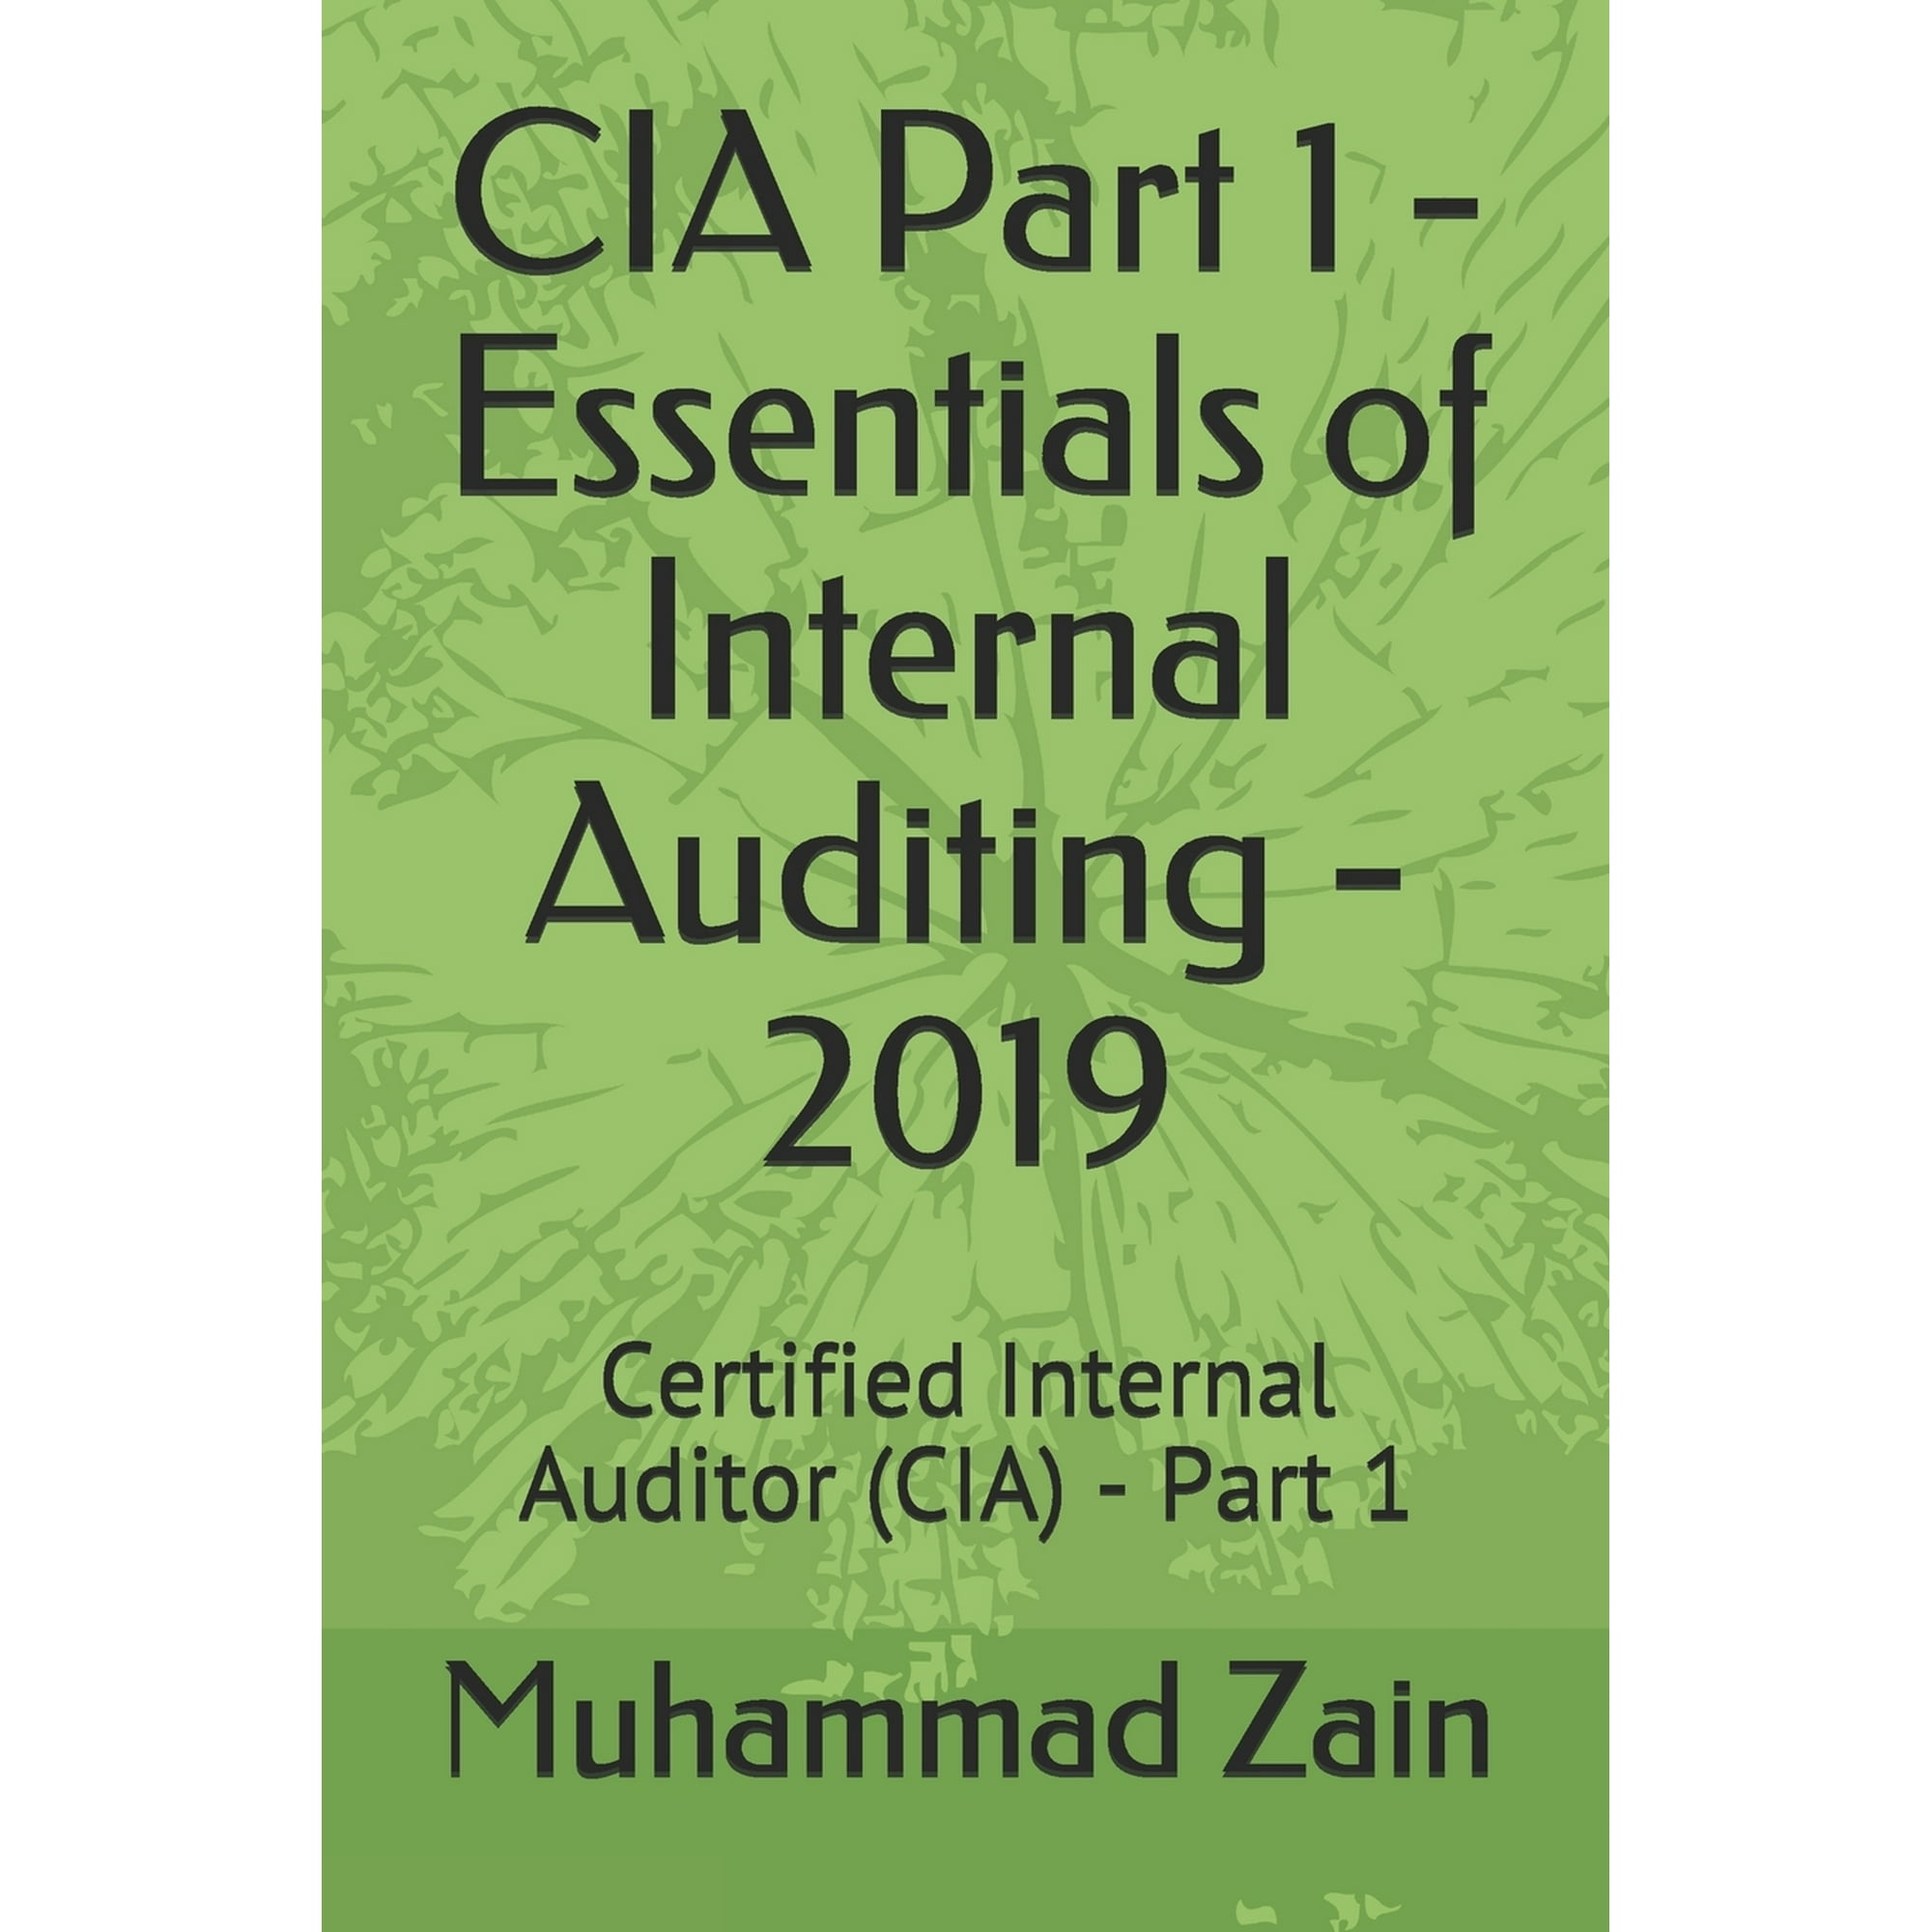 CIA Part 1: CIA Part 1 - Essentials of Internal Auditing - 2019